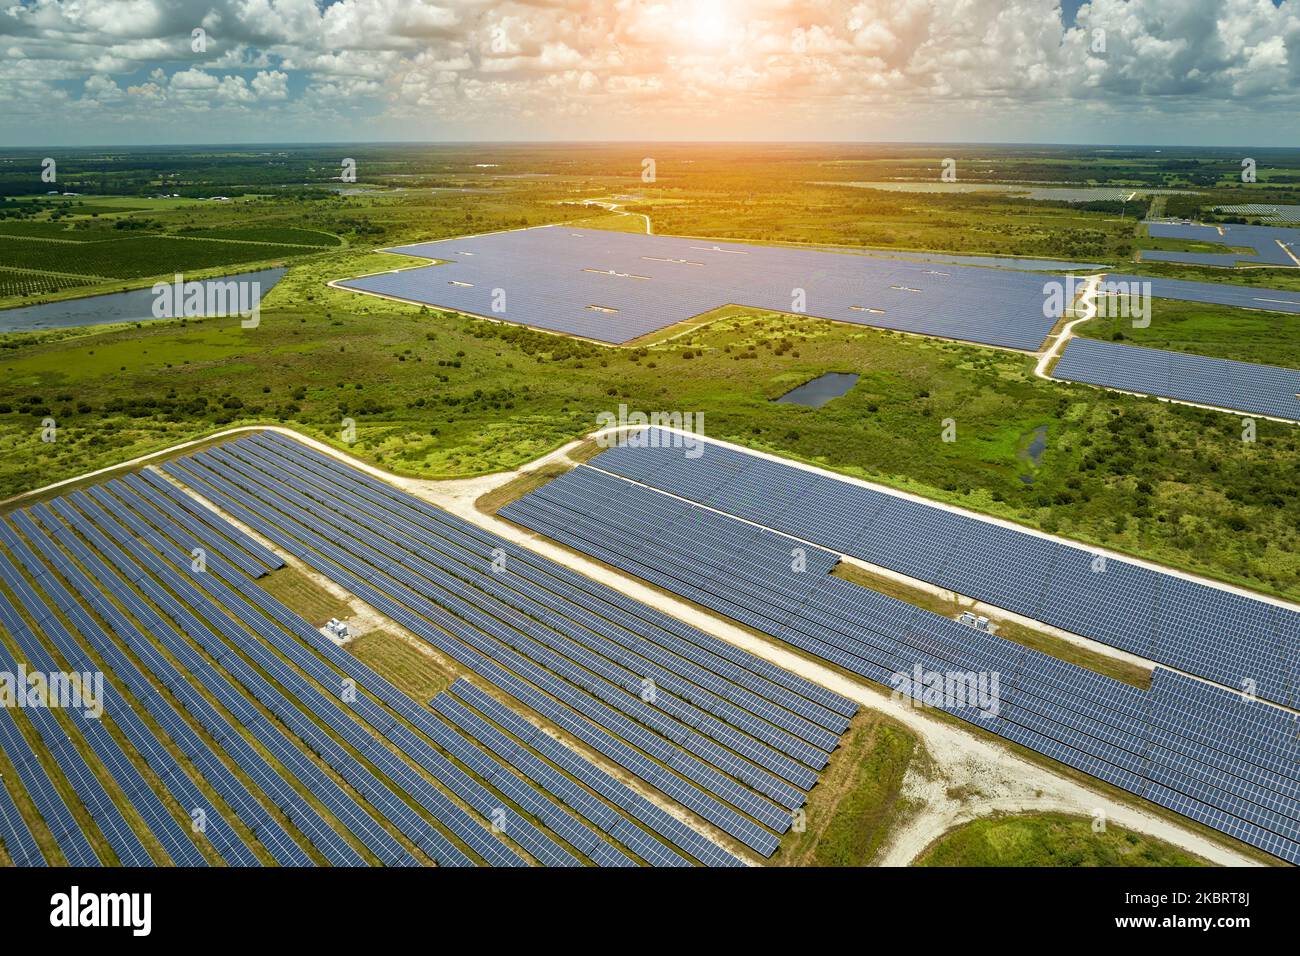 Vista aerea di una grande centrale elettrica sostenibile con molte file di pannelli solari fotovoltaici per la produzione di energia elettrica pulita. Rinnovabile Foto Stock